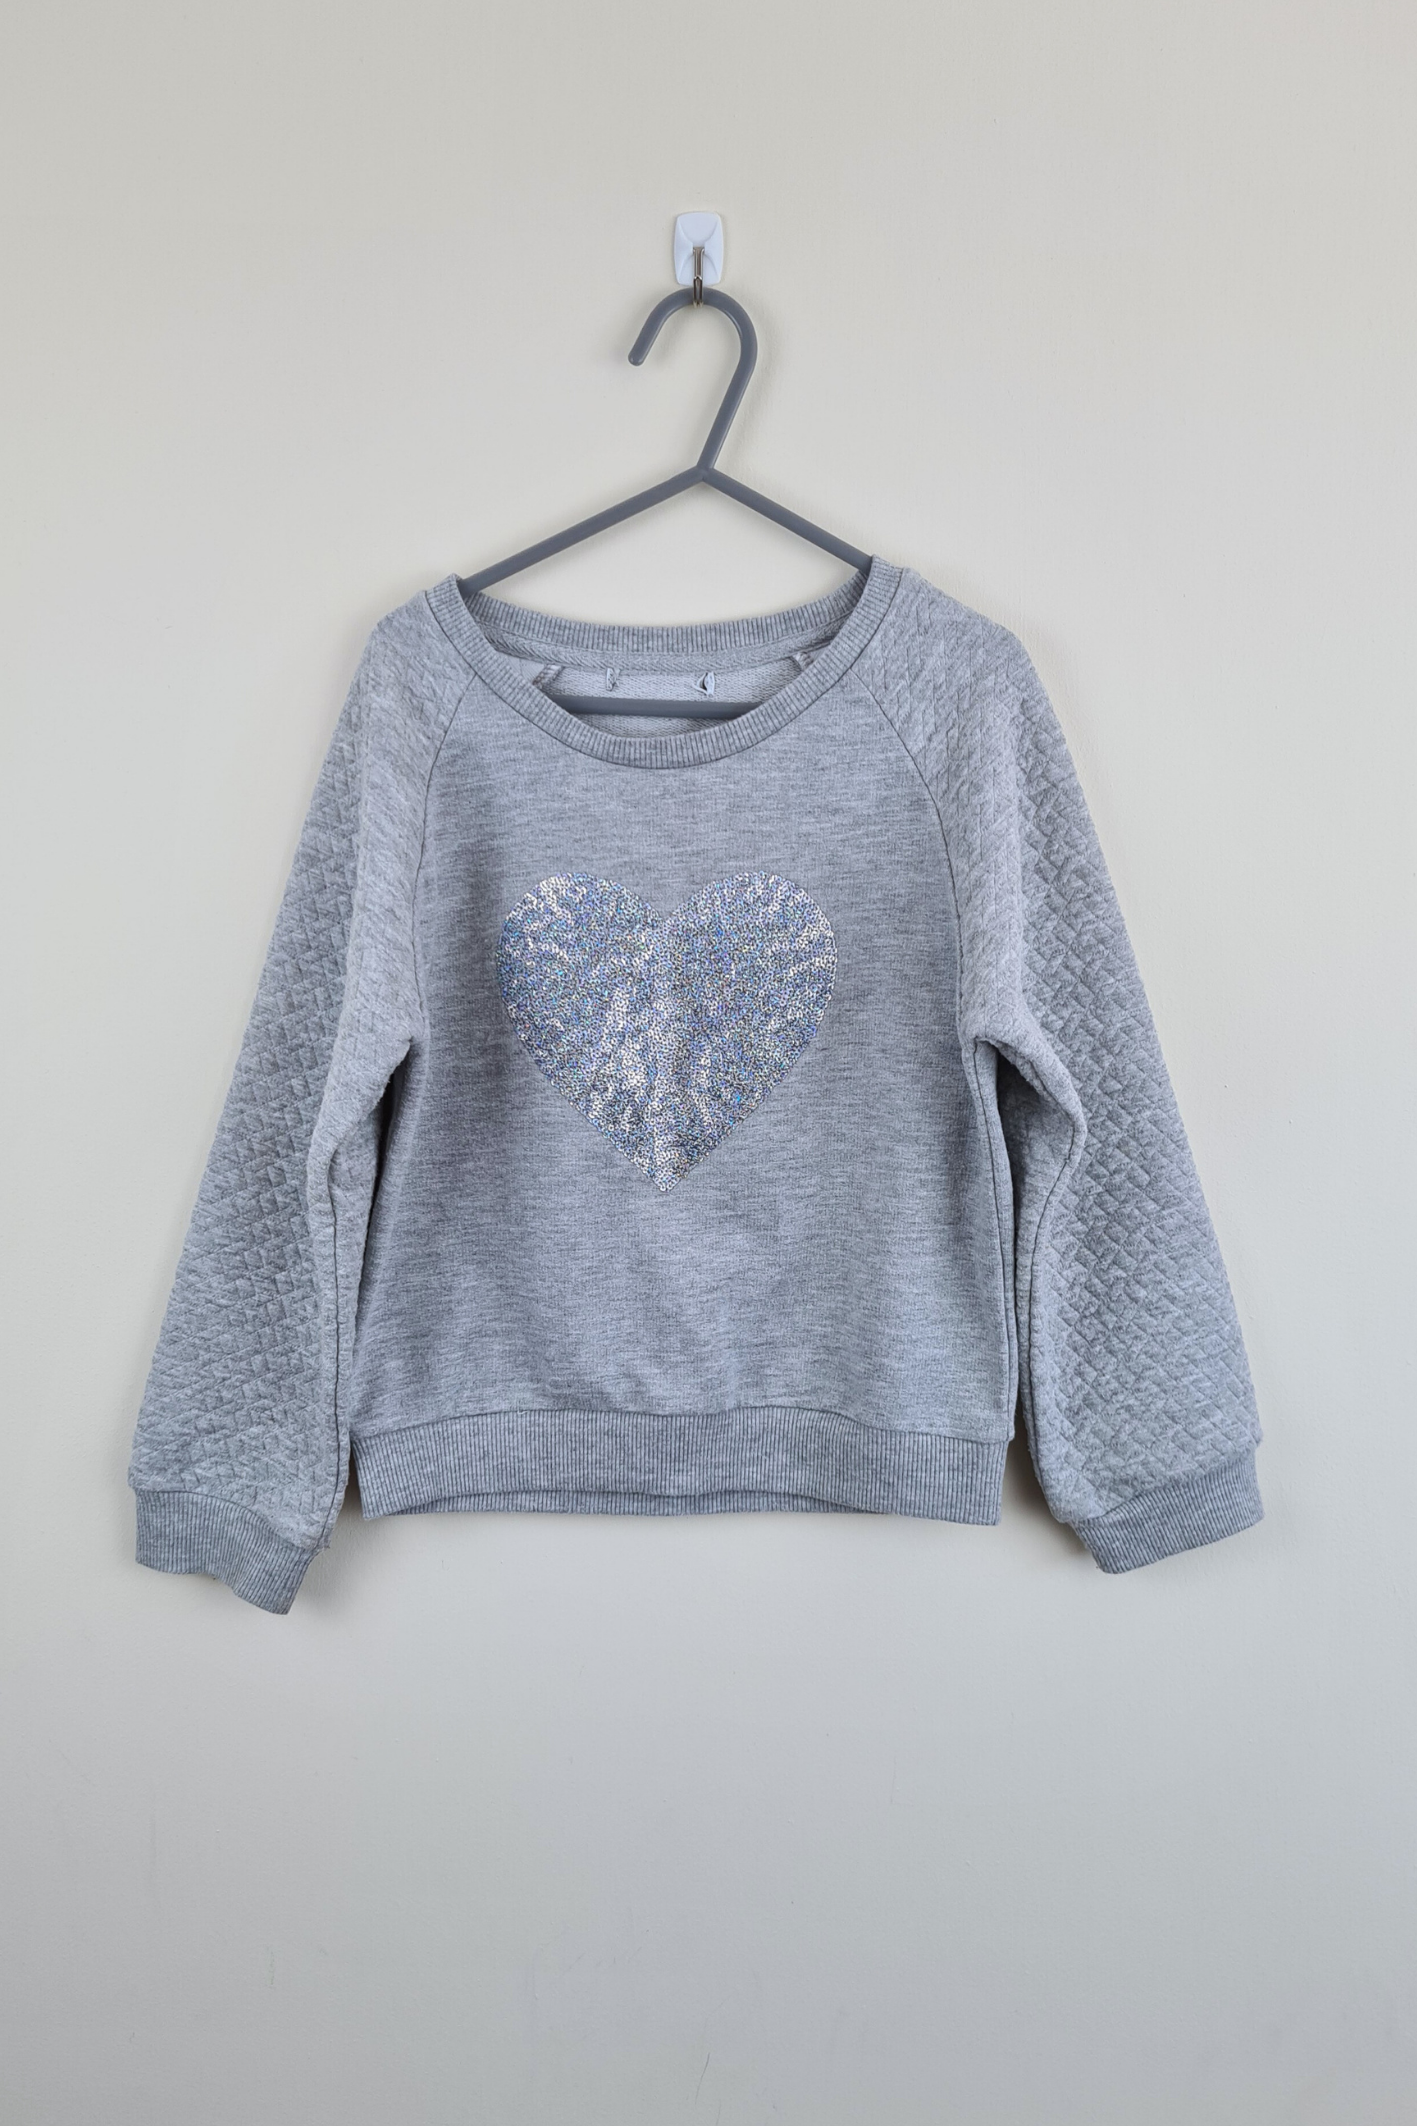 6y - Silver Heart Grey Sweatshirt (Next)